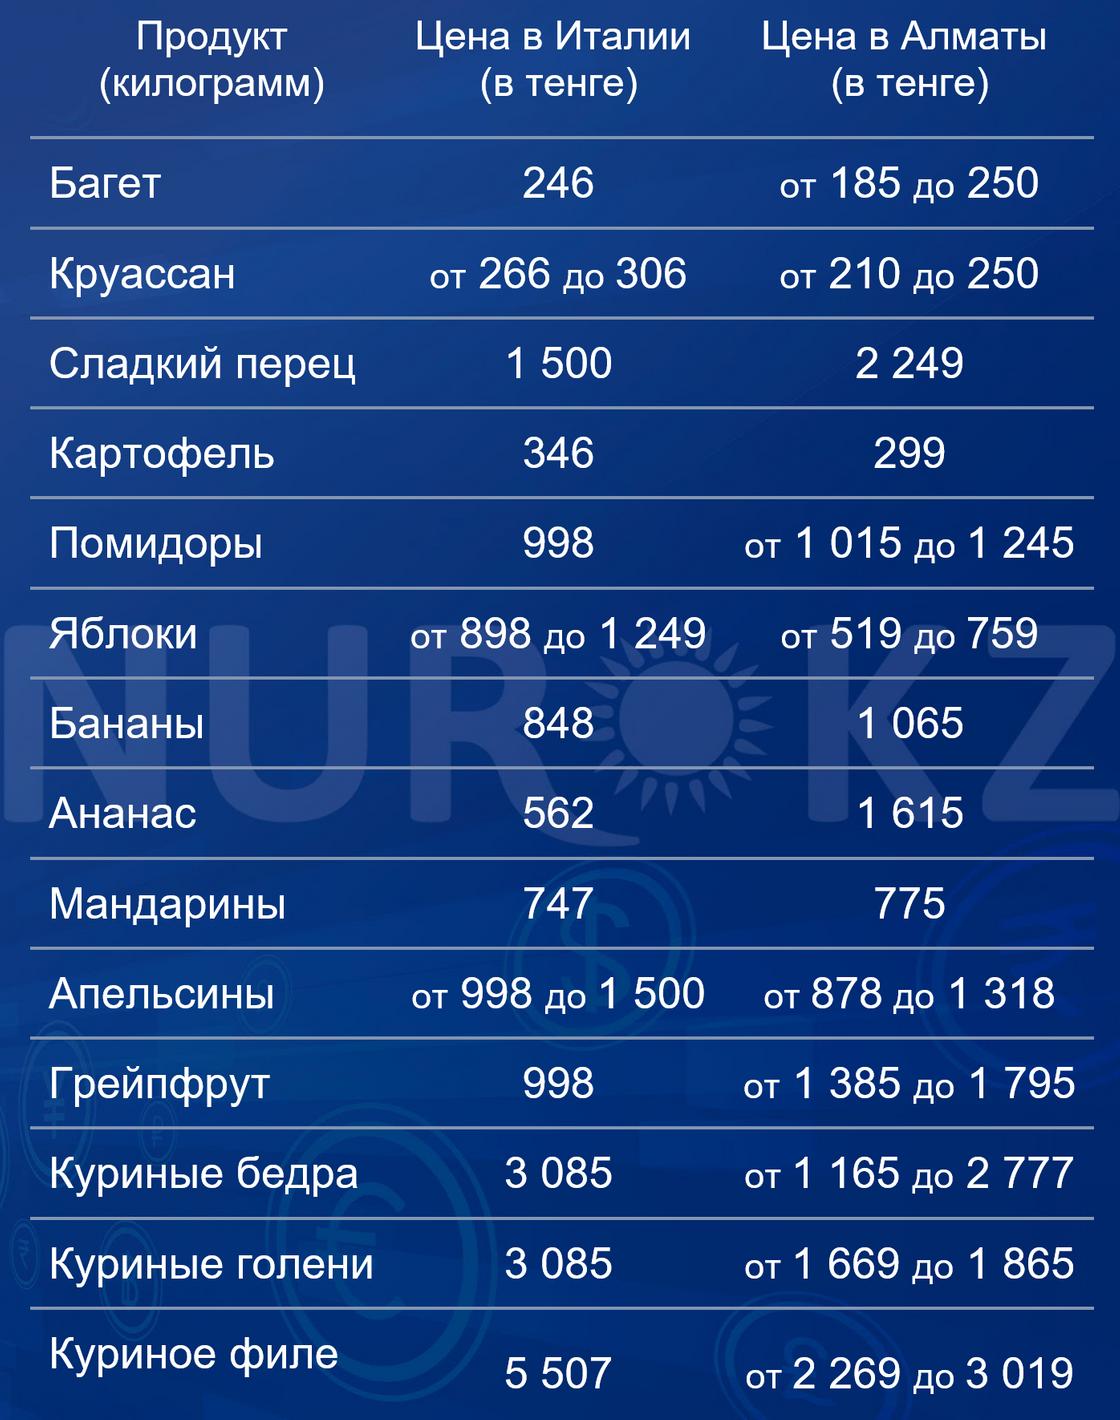 Цены на продукты питания в Казахстане и Италии